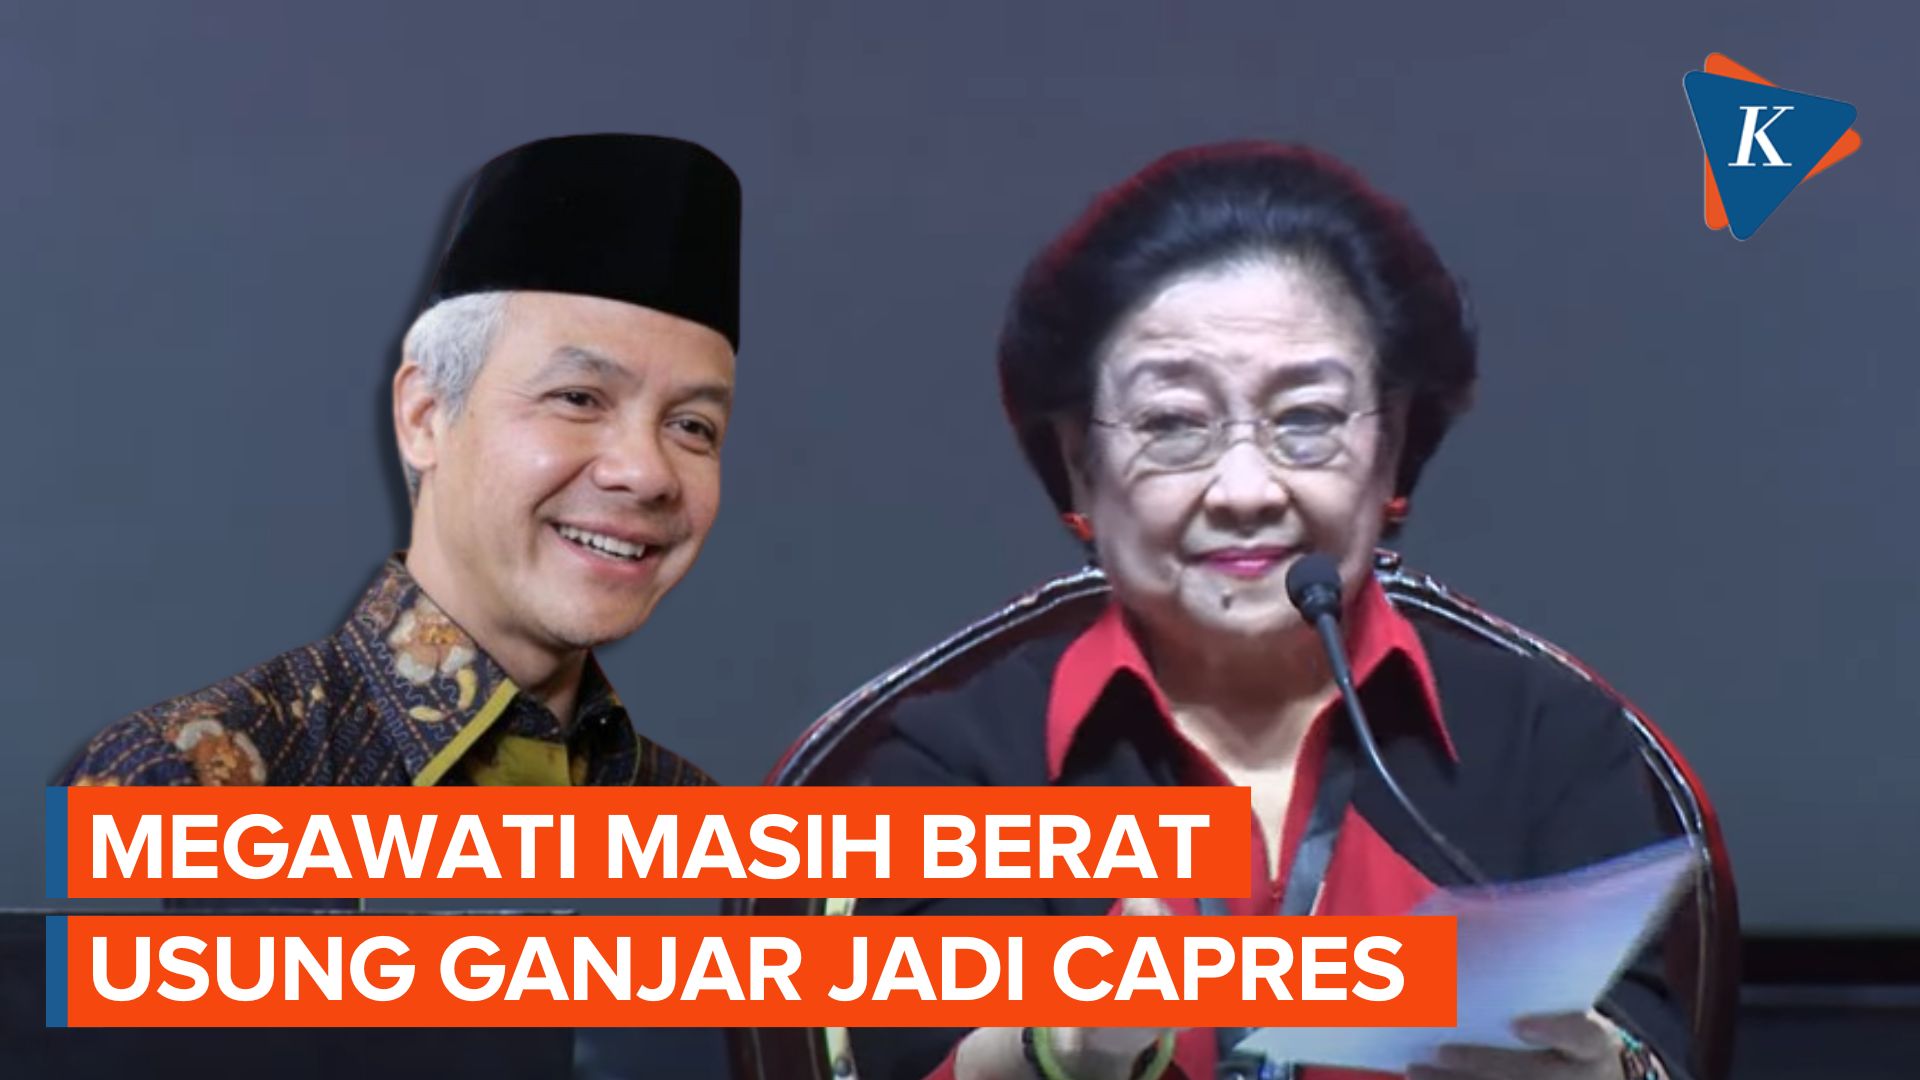 Megawati Masih Berat Usung Ganjar Jadi Capres